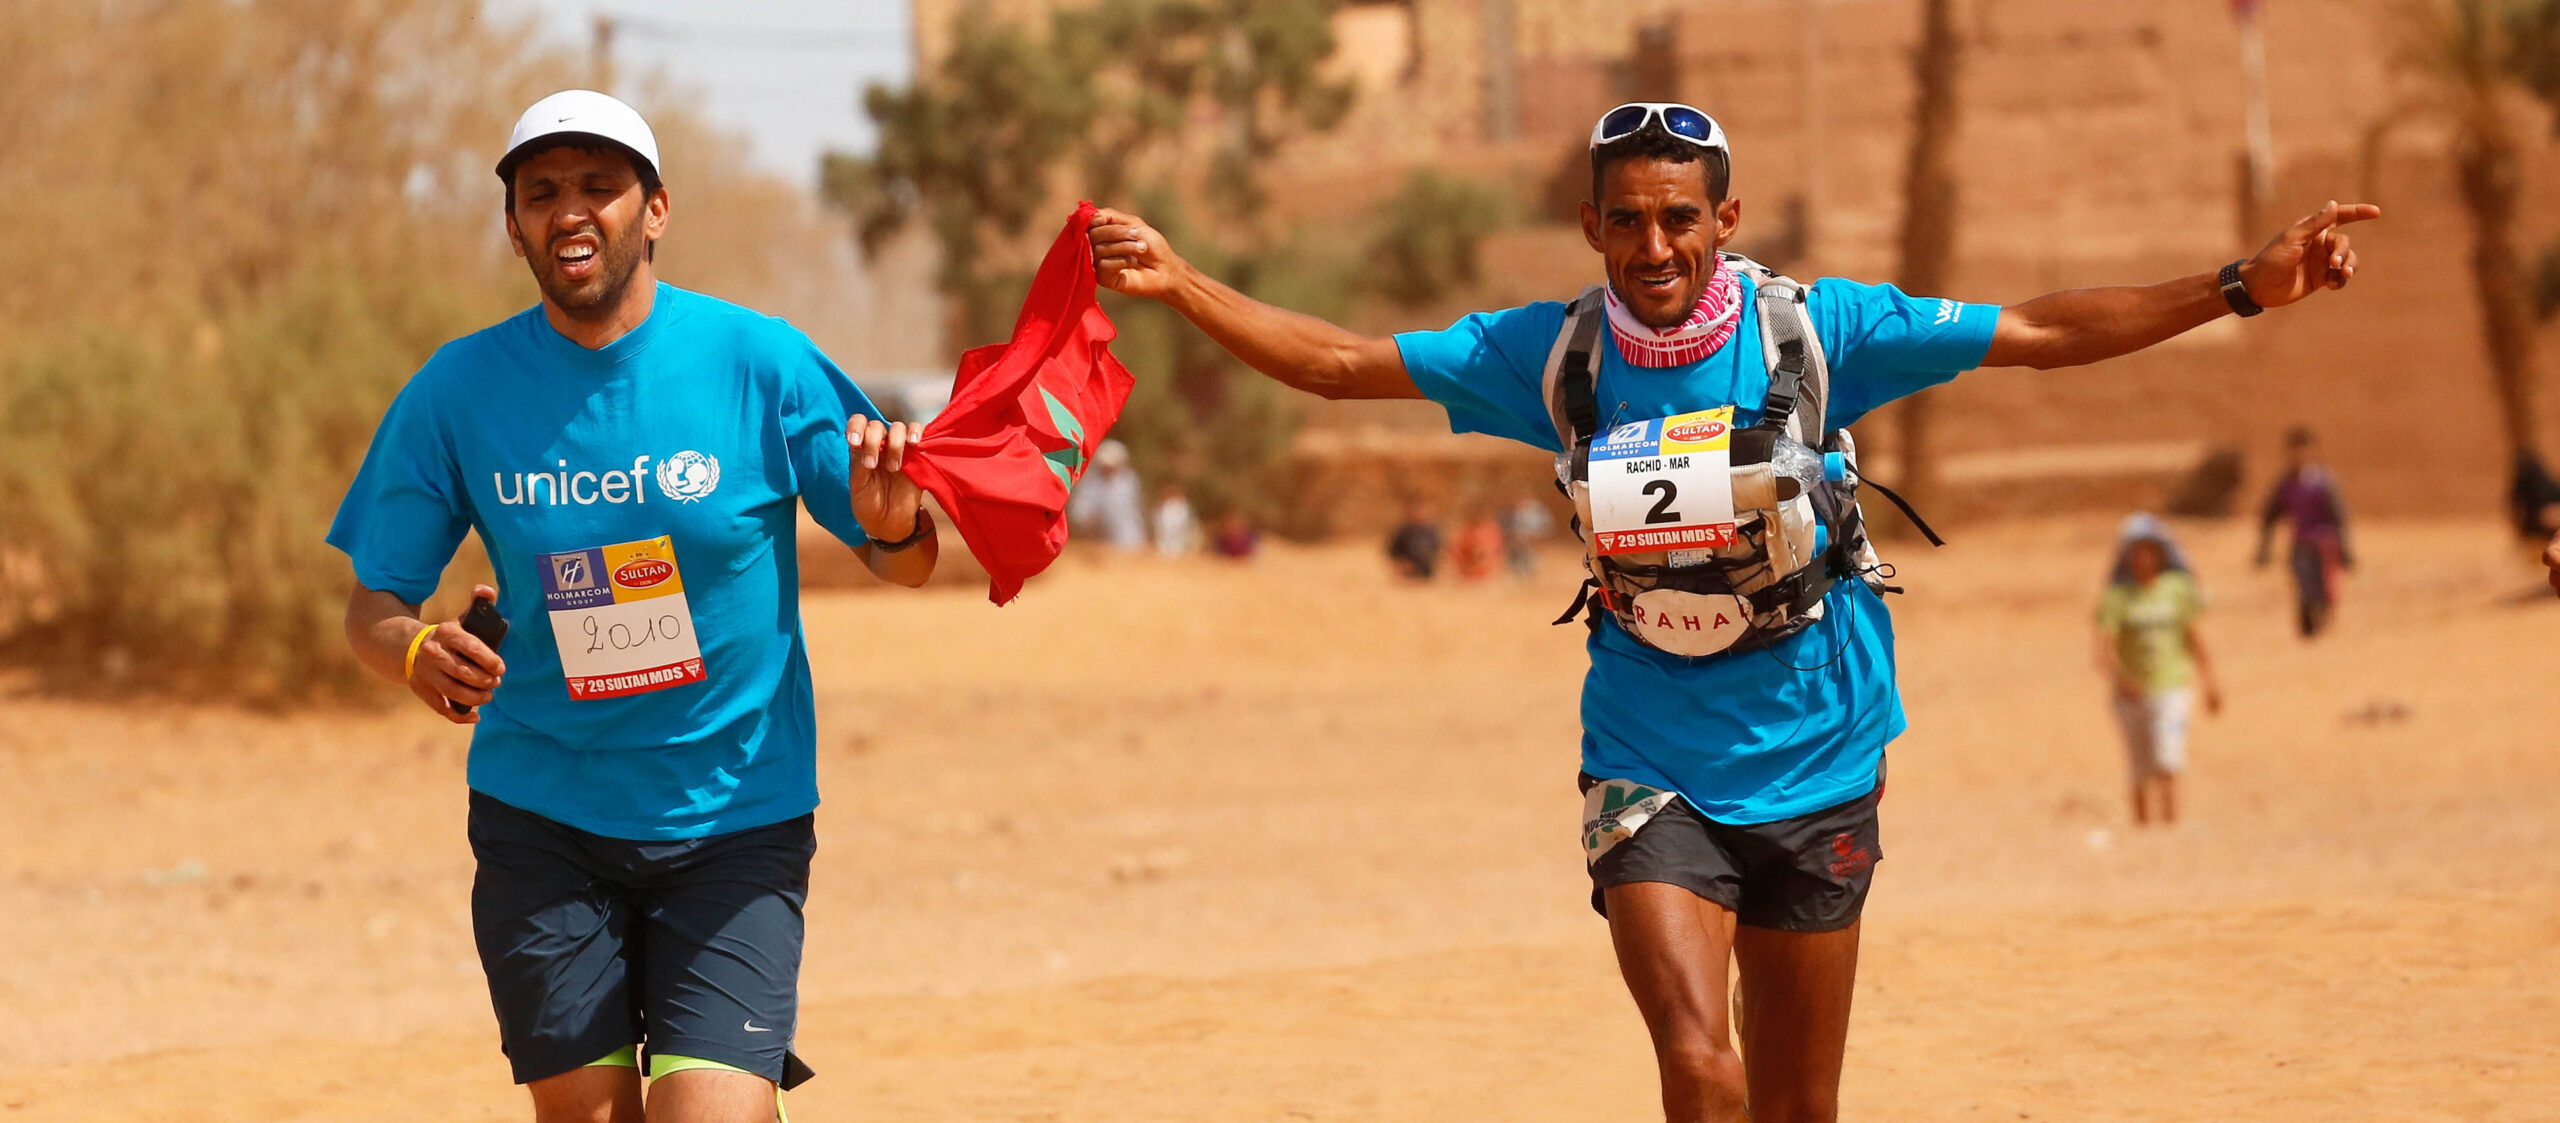 Rachid El Morabity (bras ouverts) a remporté son huitième Marathon des sables.